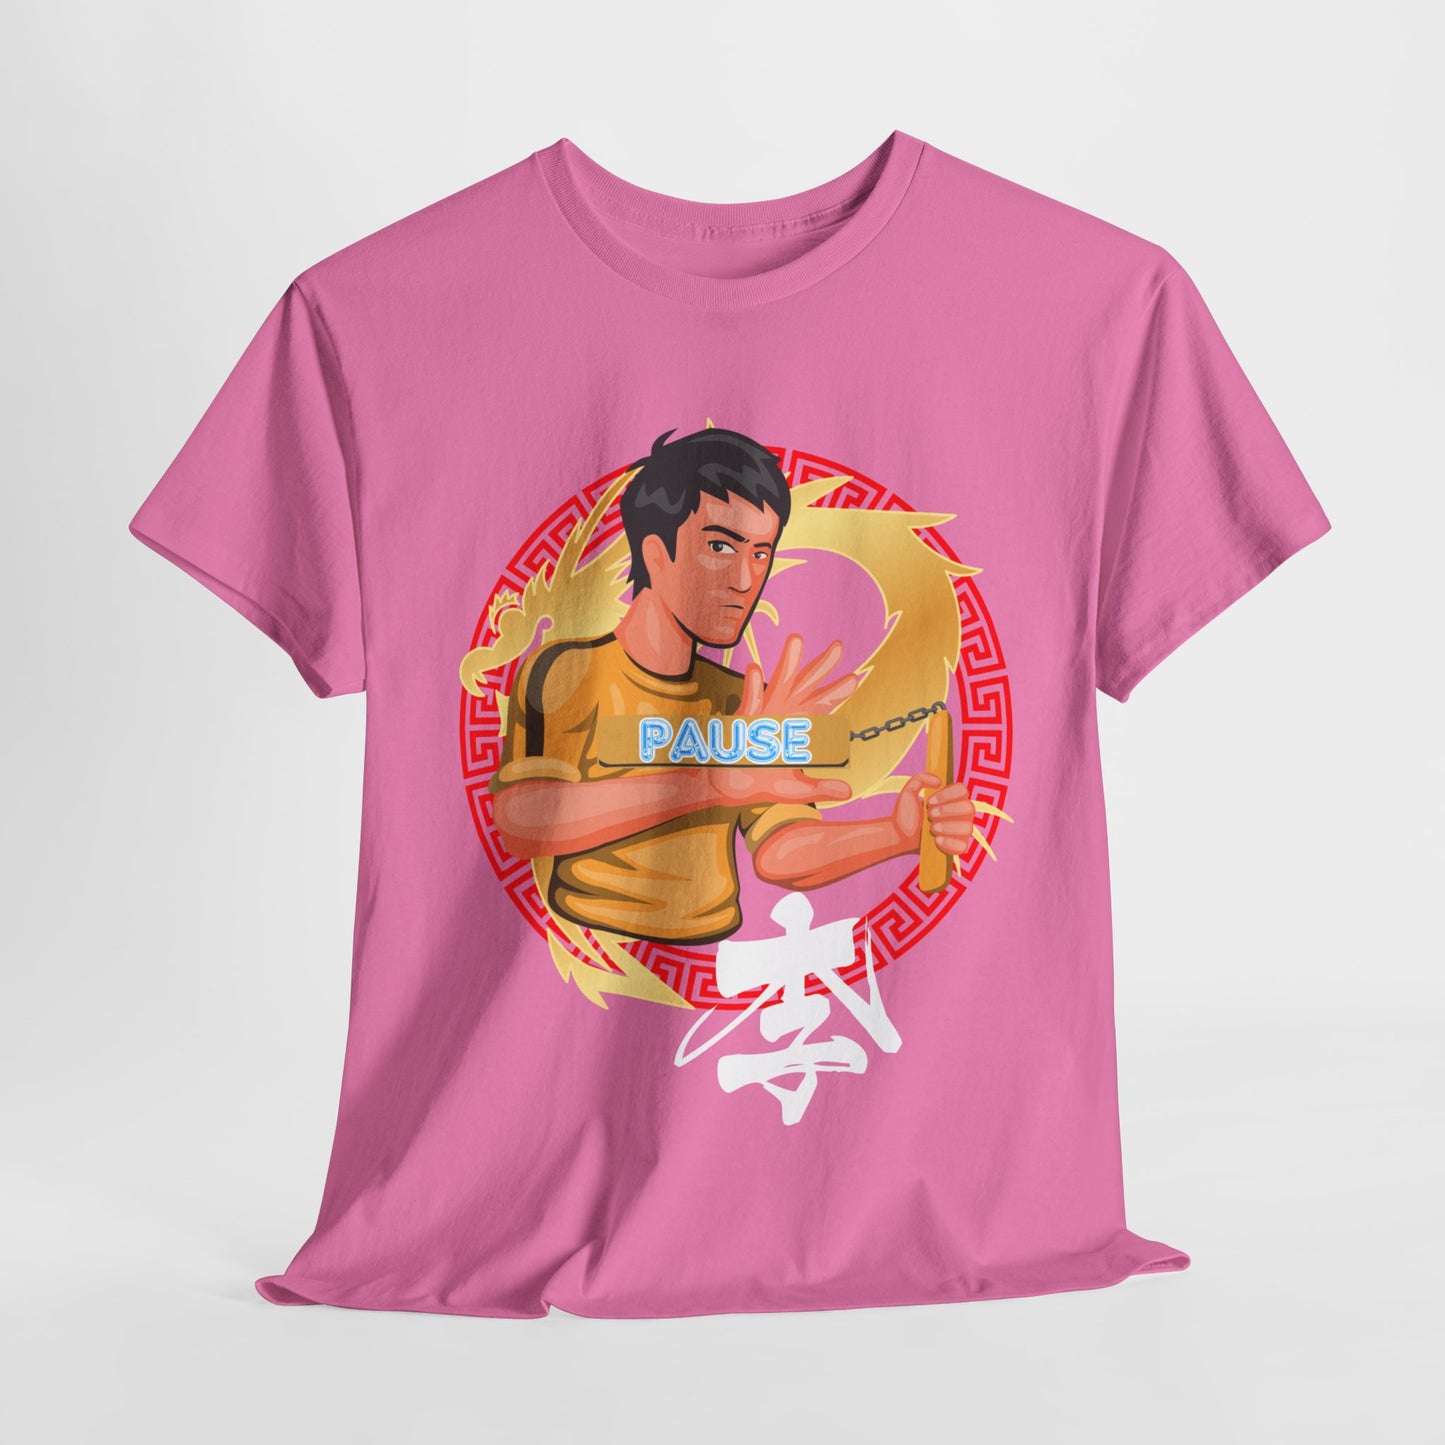 Unisex Heavy Cotton Graphic design (Bruce Lee/Pause) T-shirt